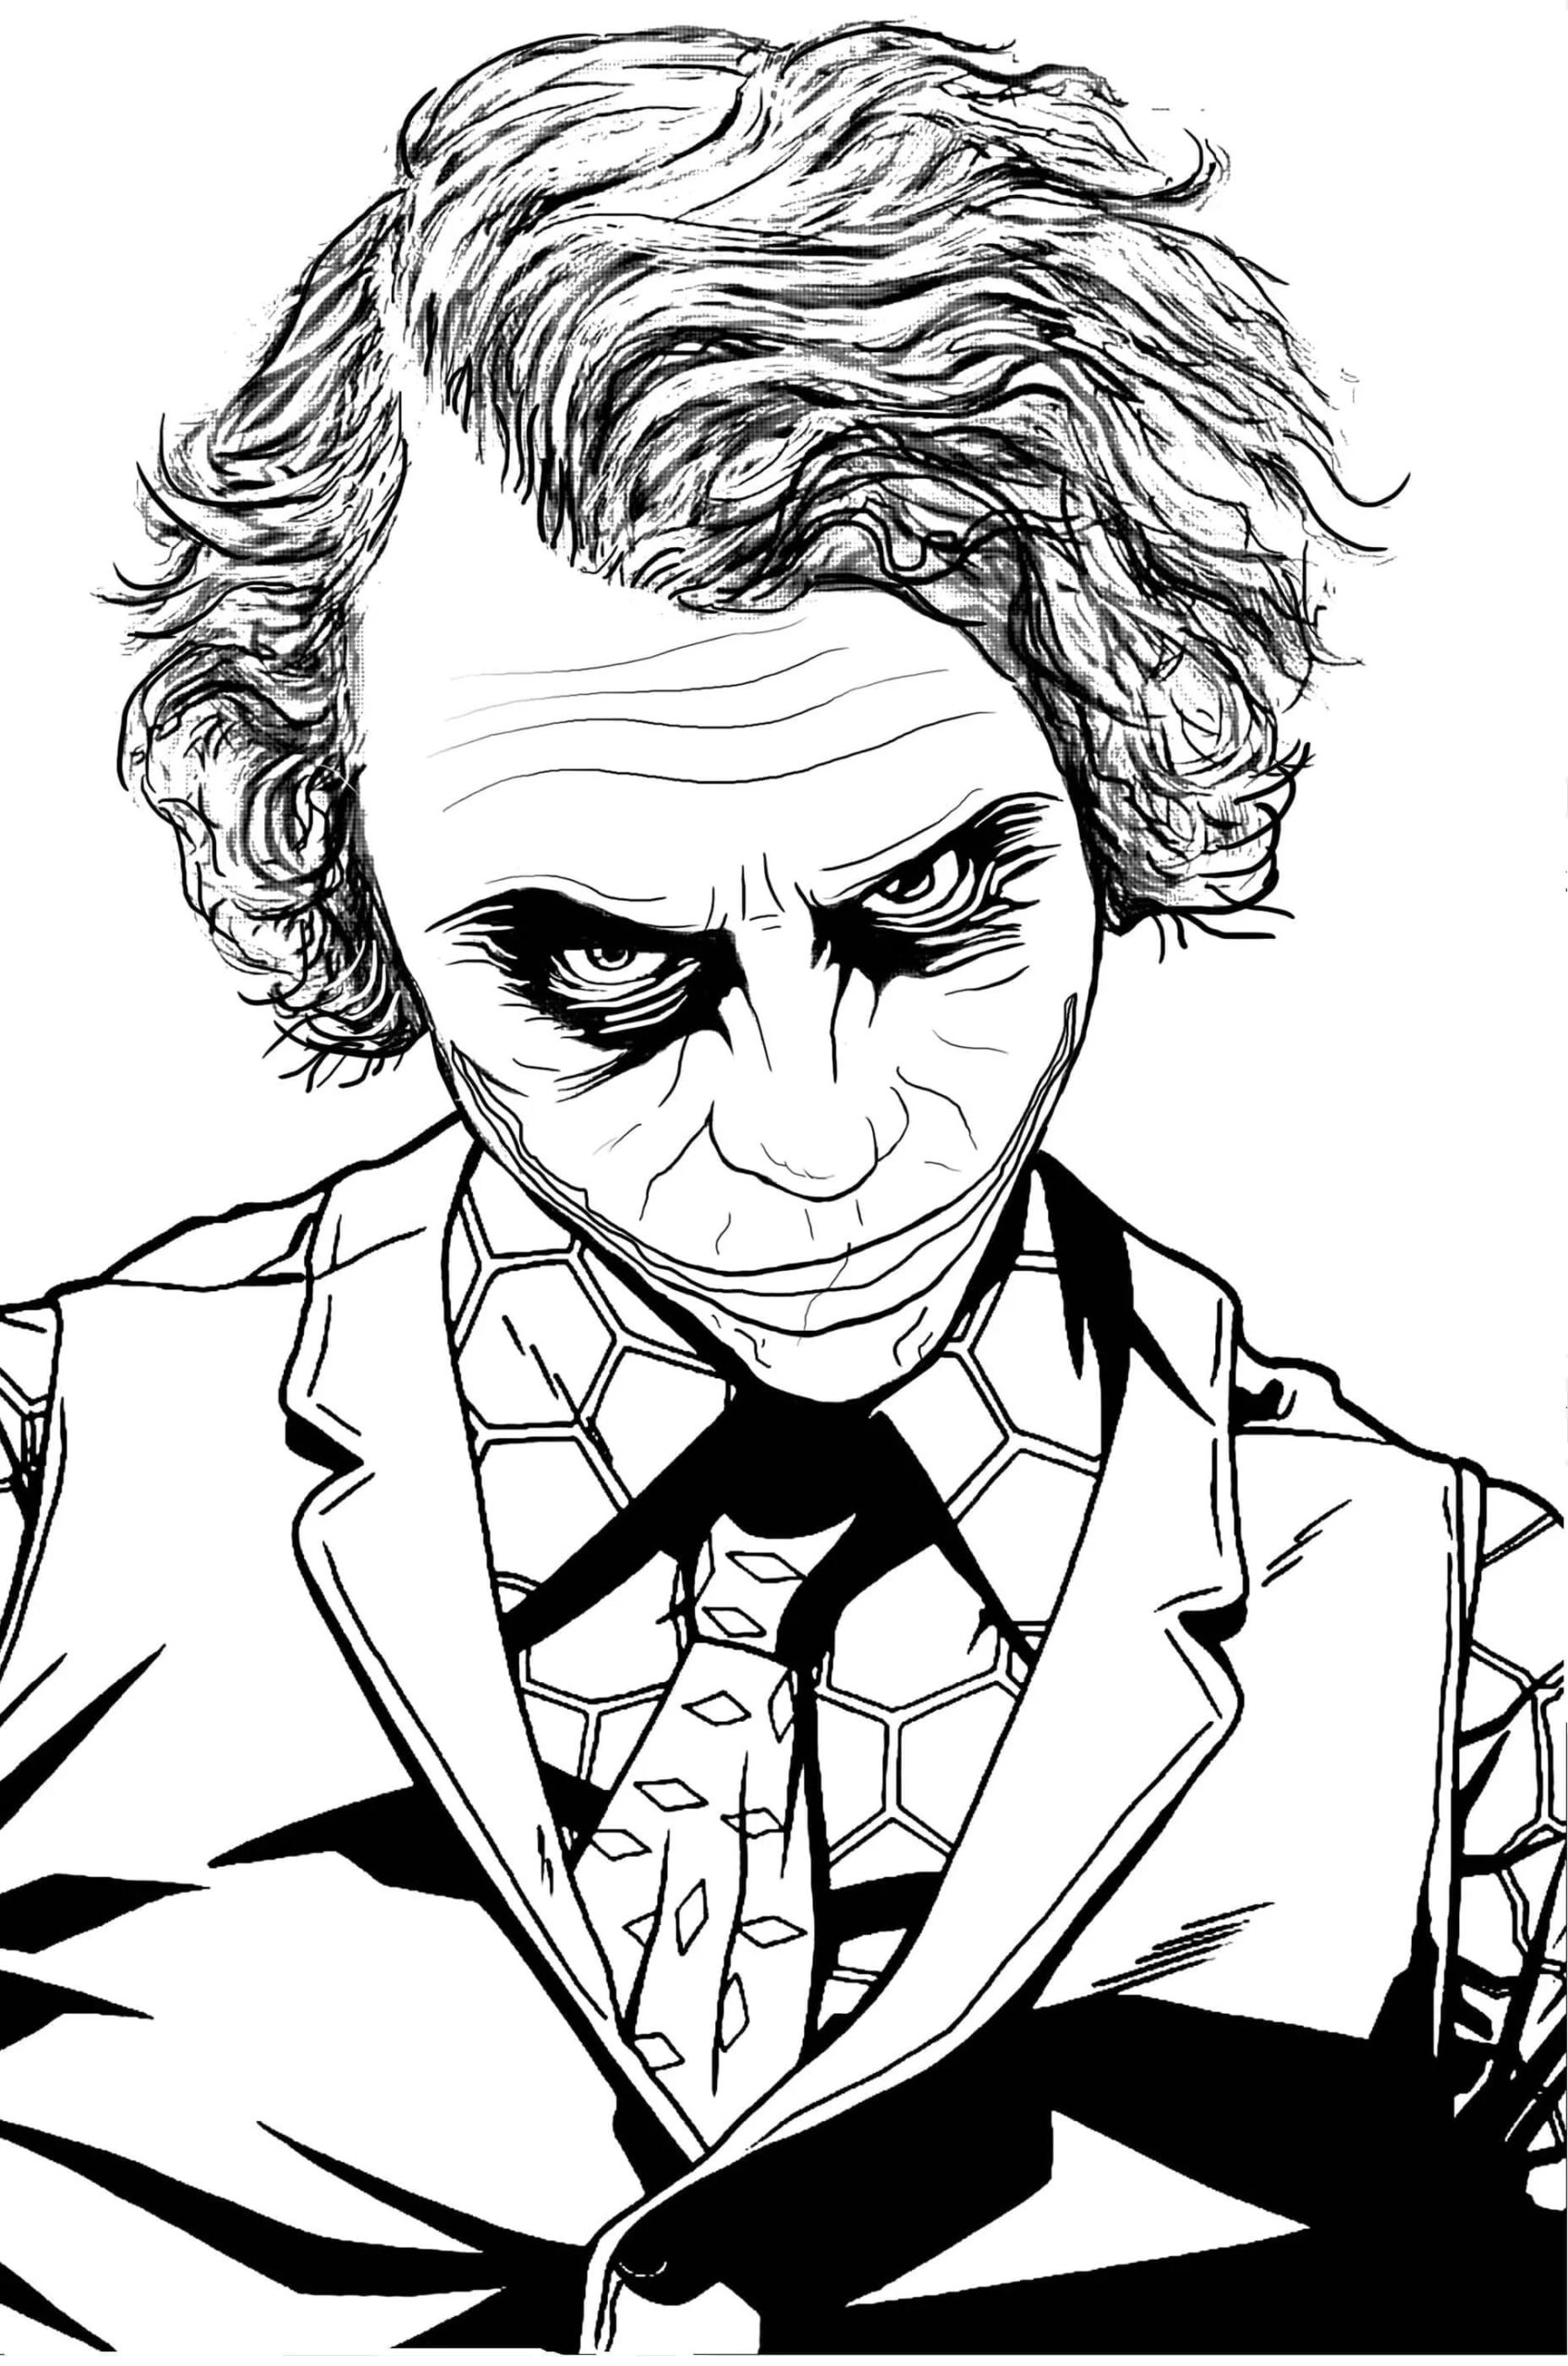 De griezelige blik van de Joker